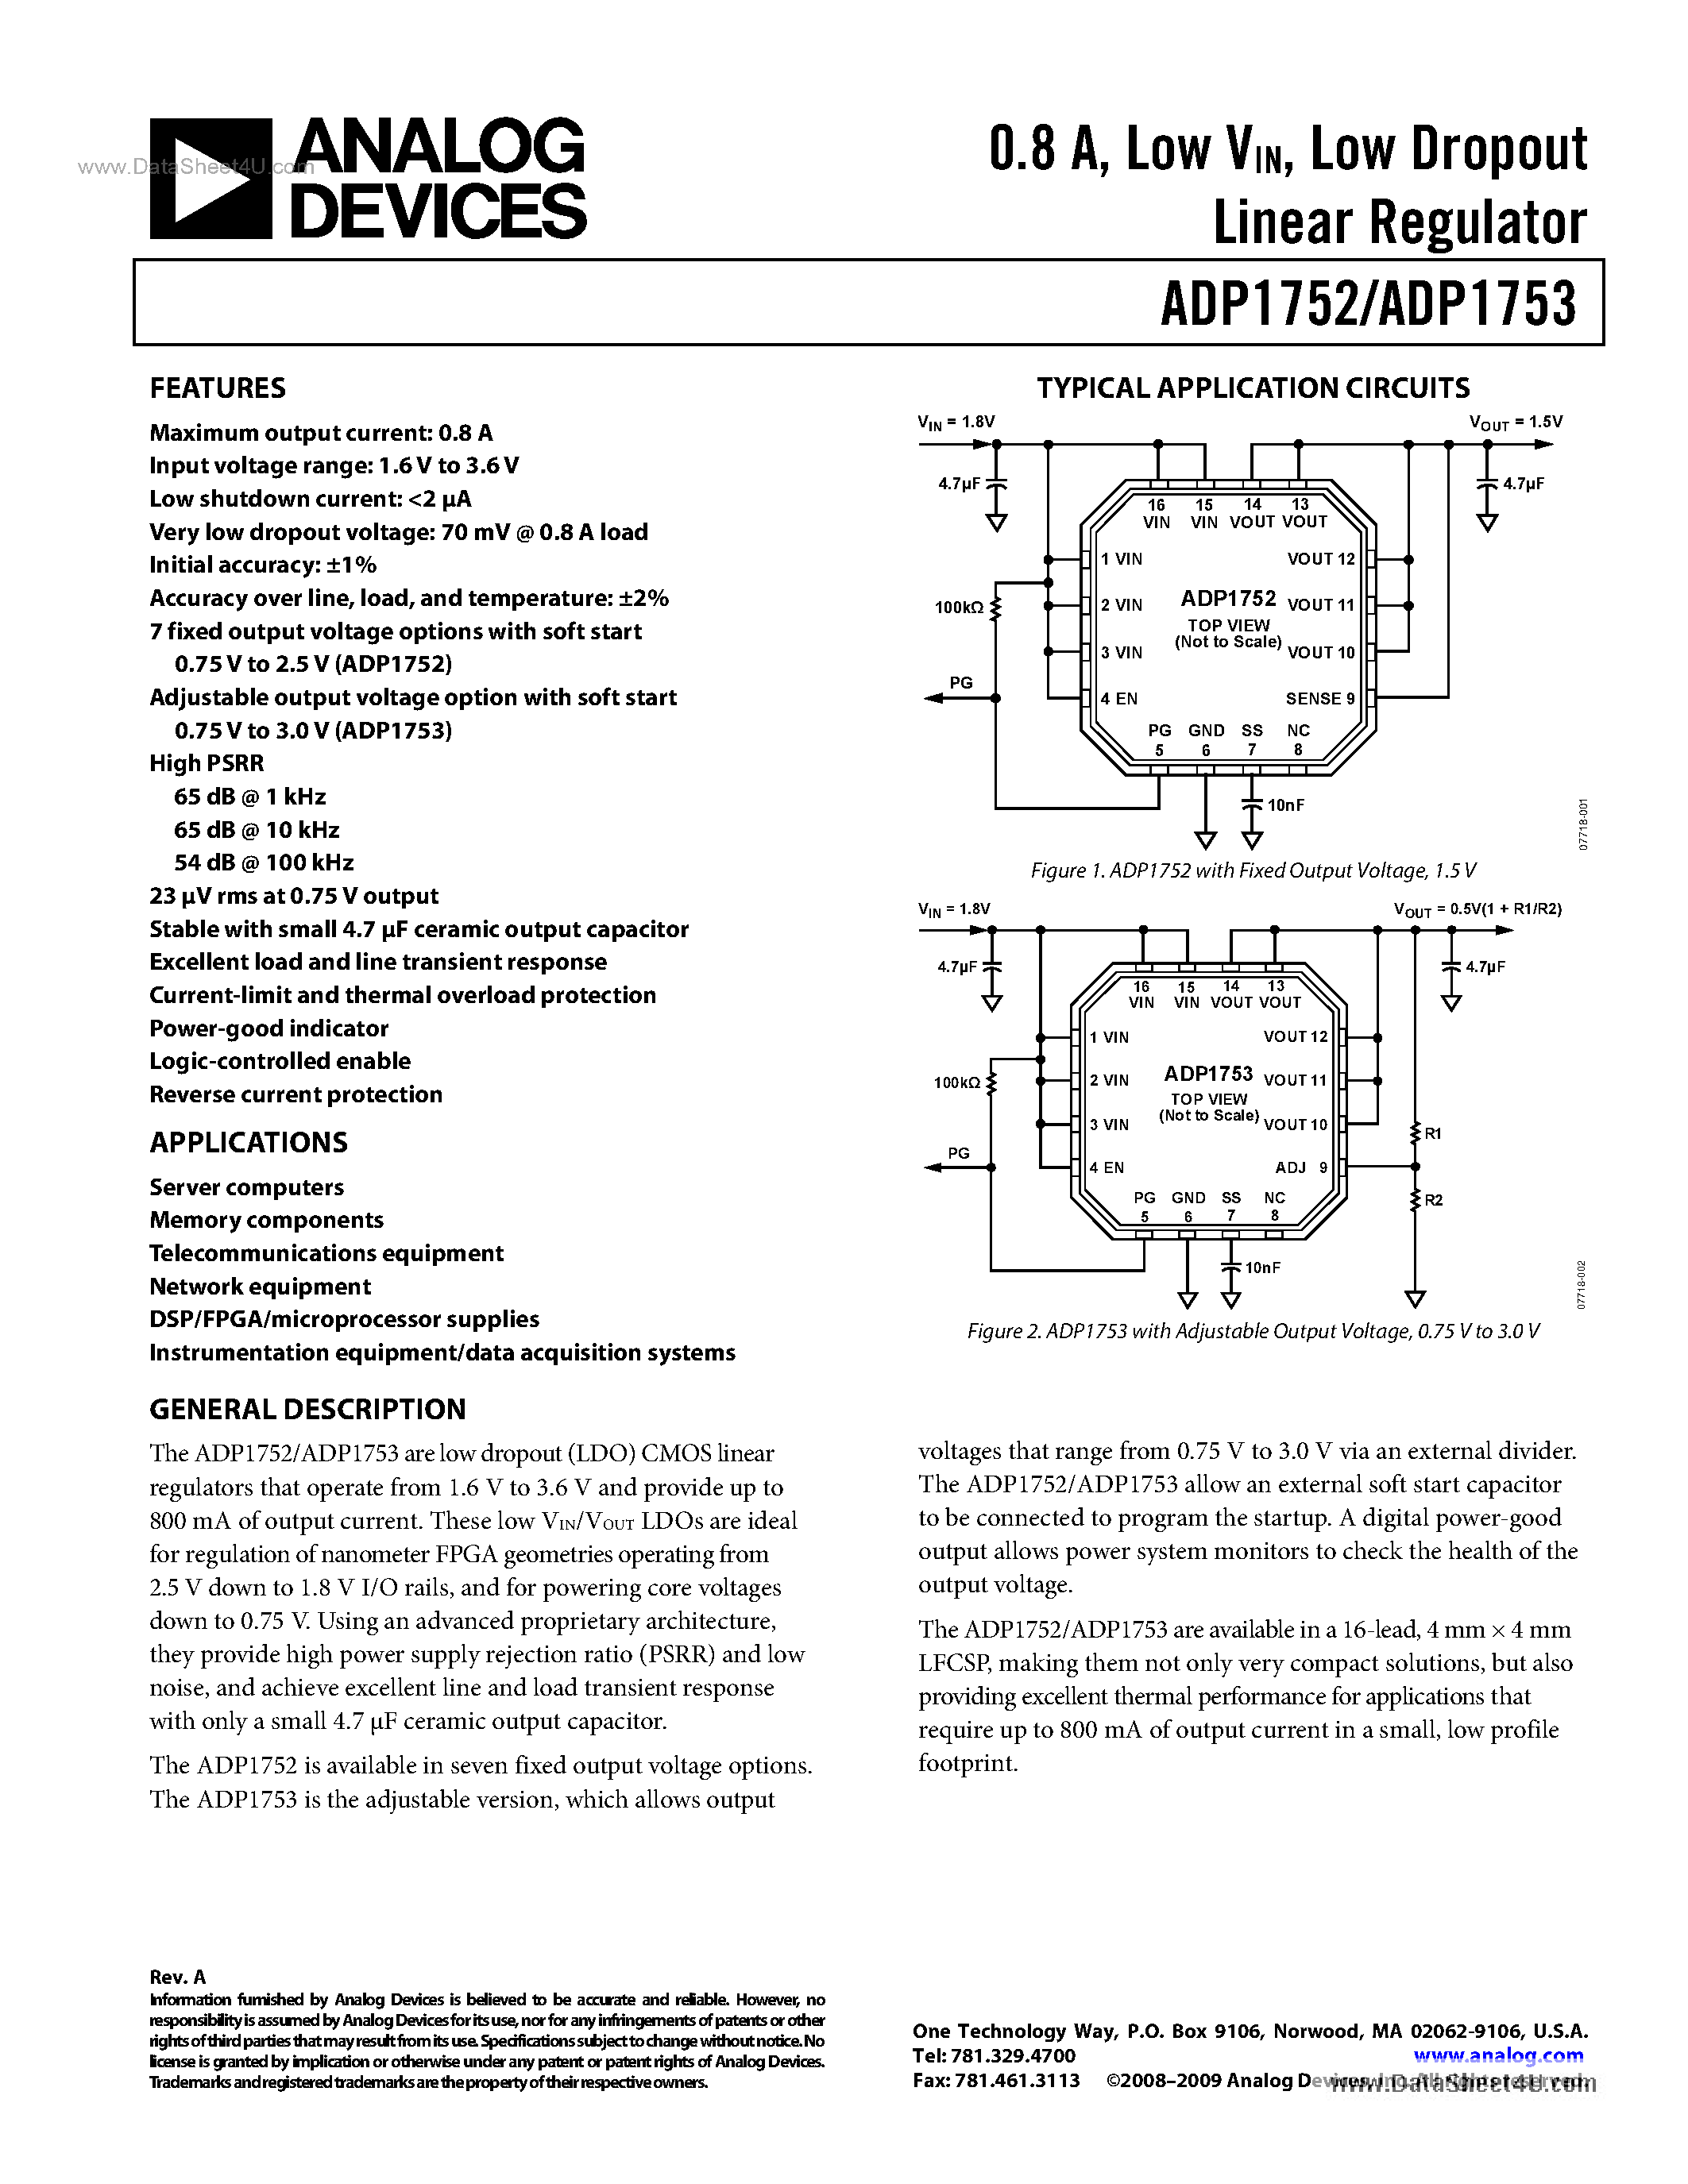 Даташит ADP1752 - (ADP1752 / ADP1753) 800mA Low-Vin LDO Regulator страница 1